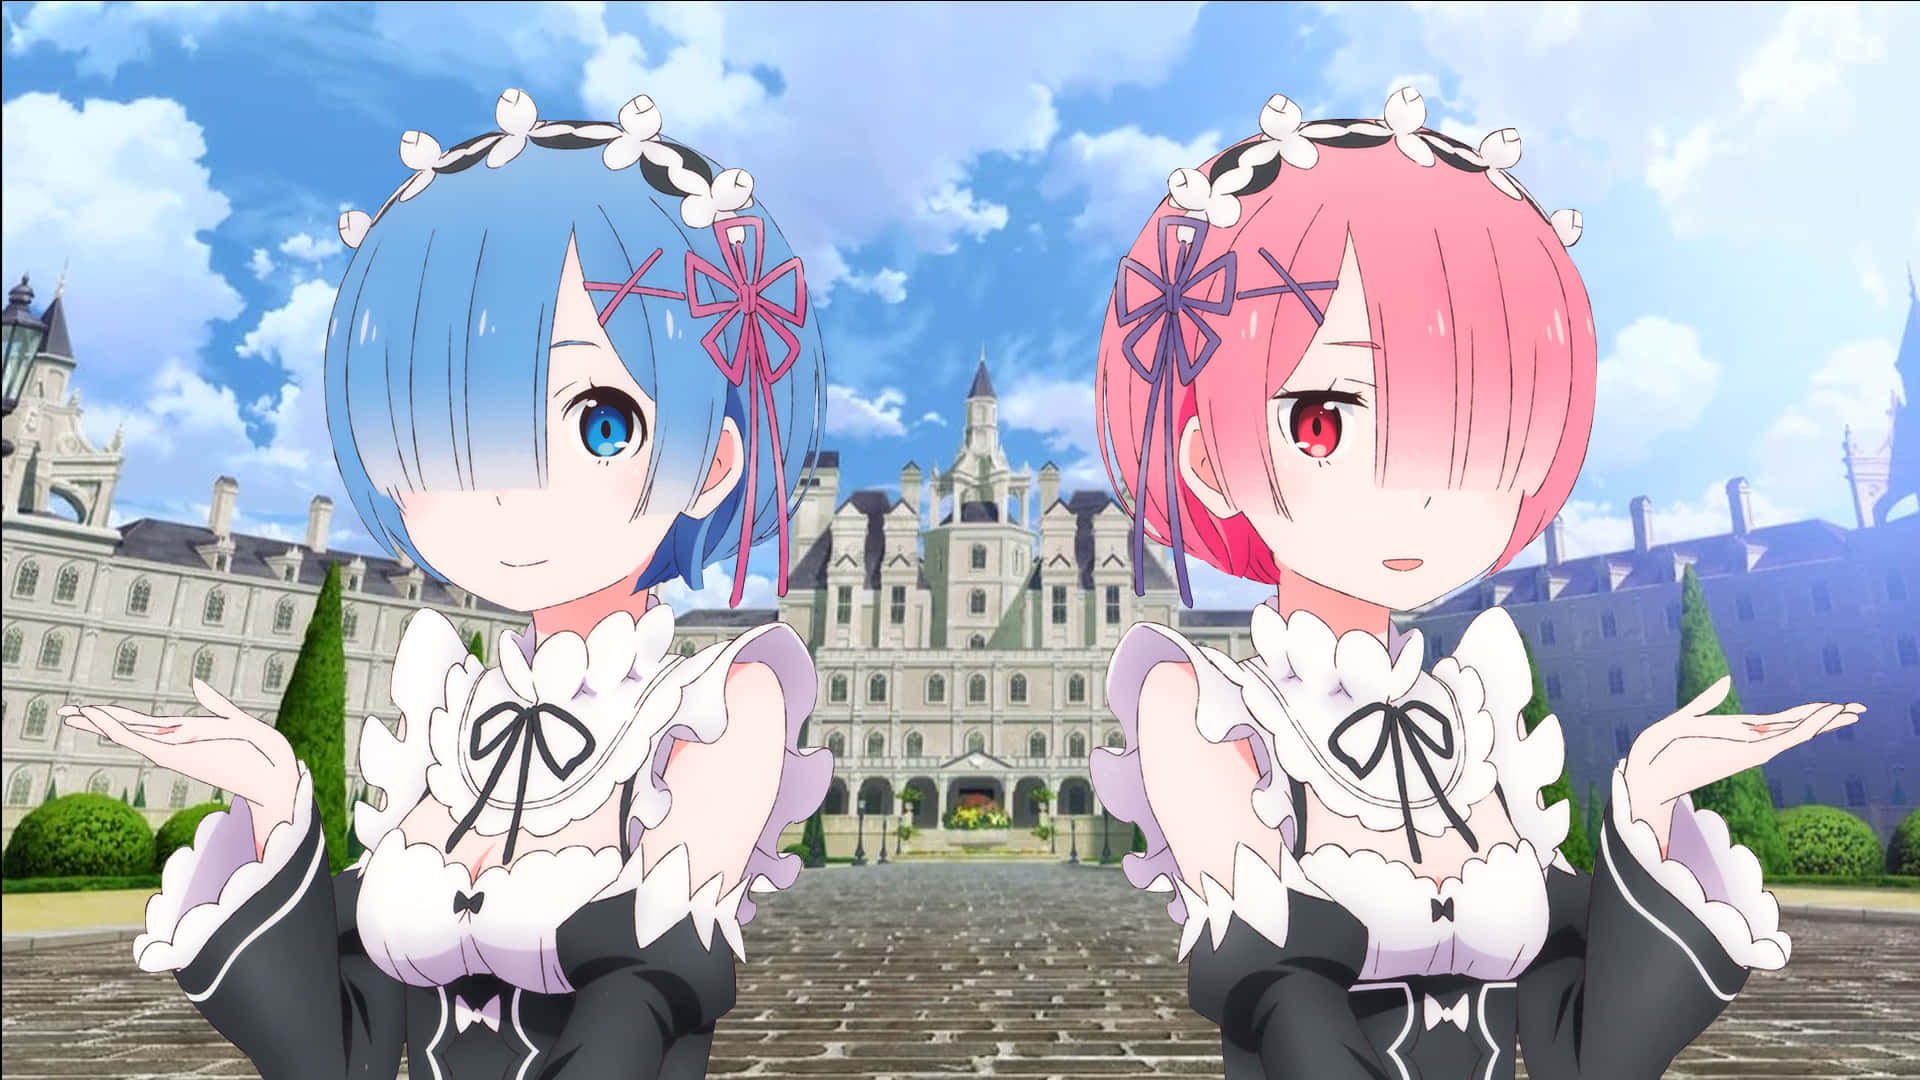 Duasmeninas De Anime Com Cabelos Azul E Rosa Em Pé Na Frente De Um Castelo. Papel de Parede